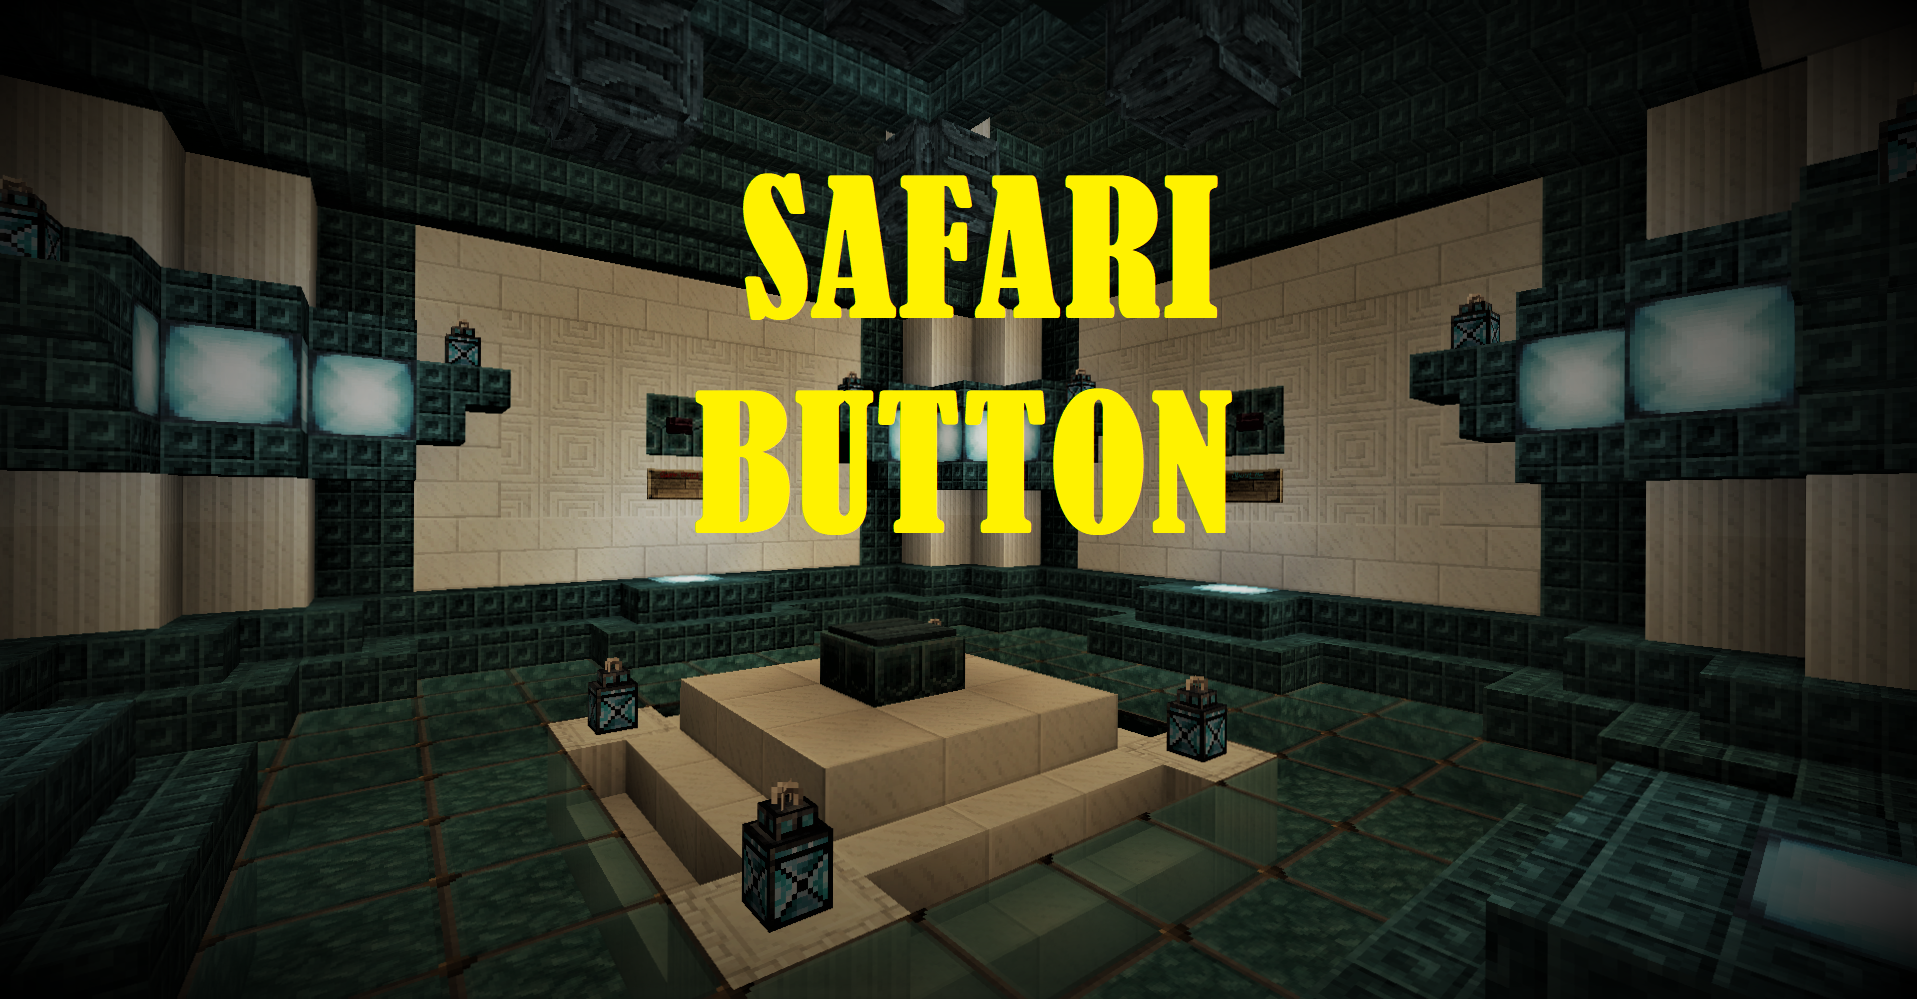 Download Safari Button for Minecraft 1.16.4